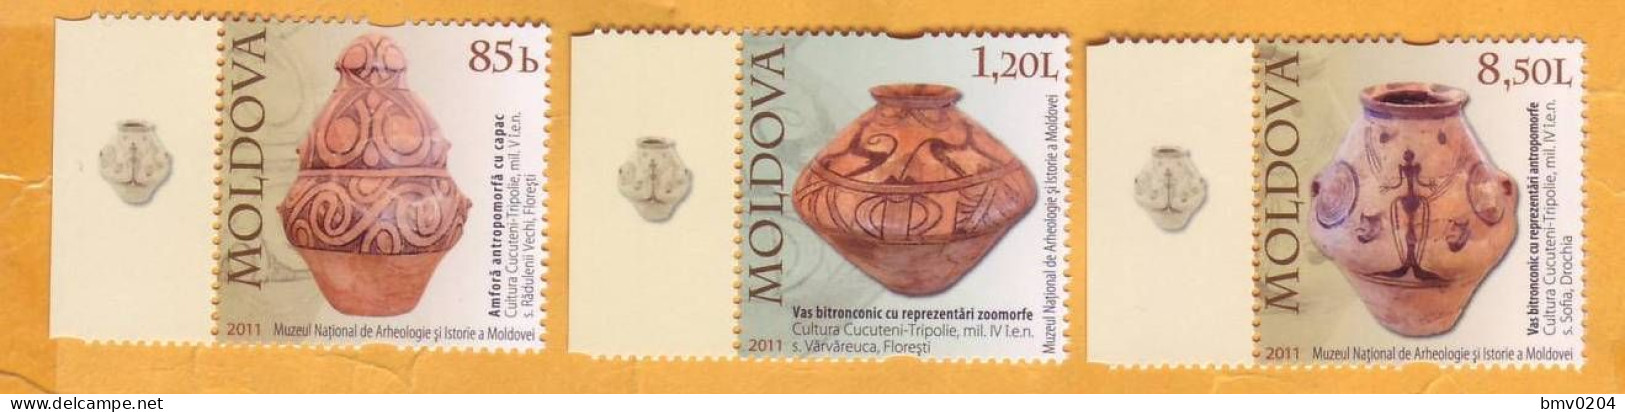 2011 Moldova Moldavie  National Museum, Archeology, Amphora, Vase, 3v Mint - Moldavie